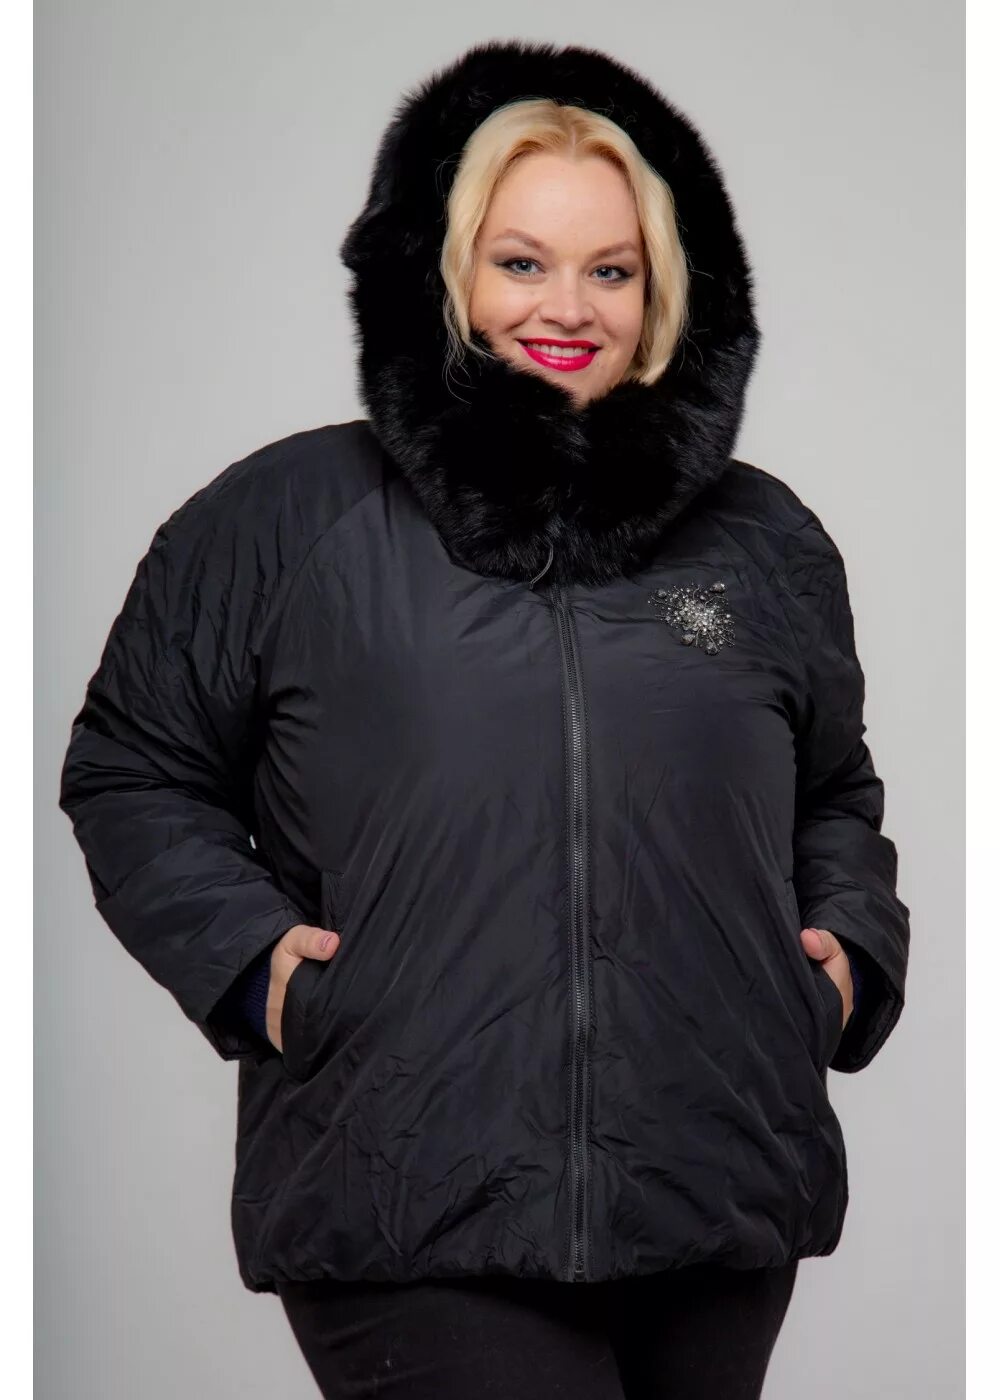 Куртки больших размеров недорого. Женские куртки больших размеров. Зимние куртки женские больших размеров. Куртки..женские.больших раз. Зимняя куртка женская большого размера.